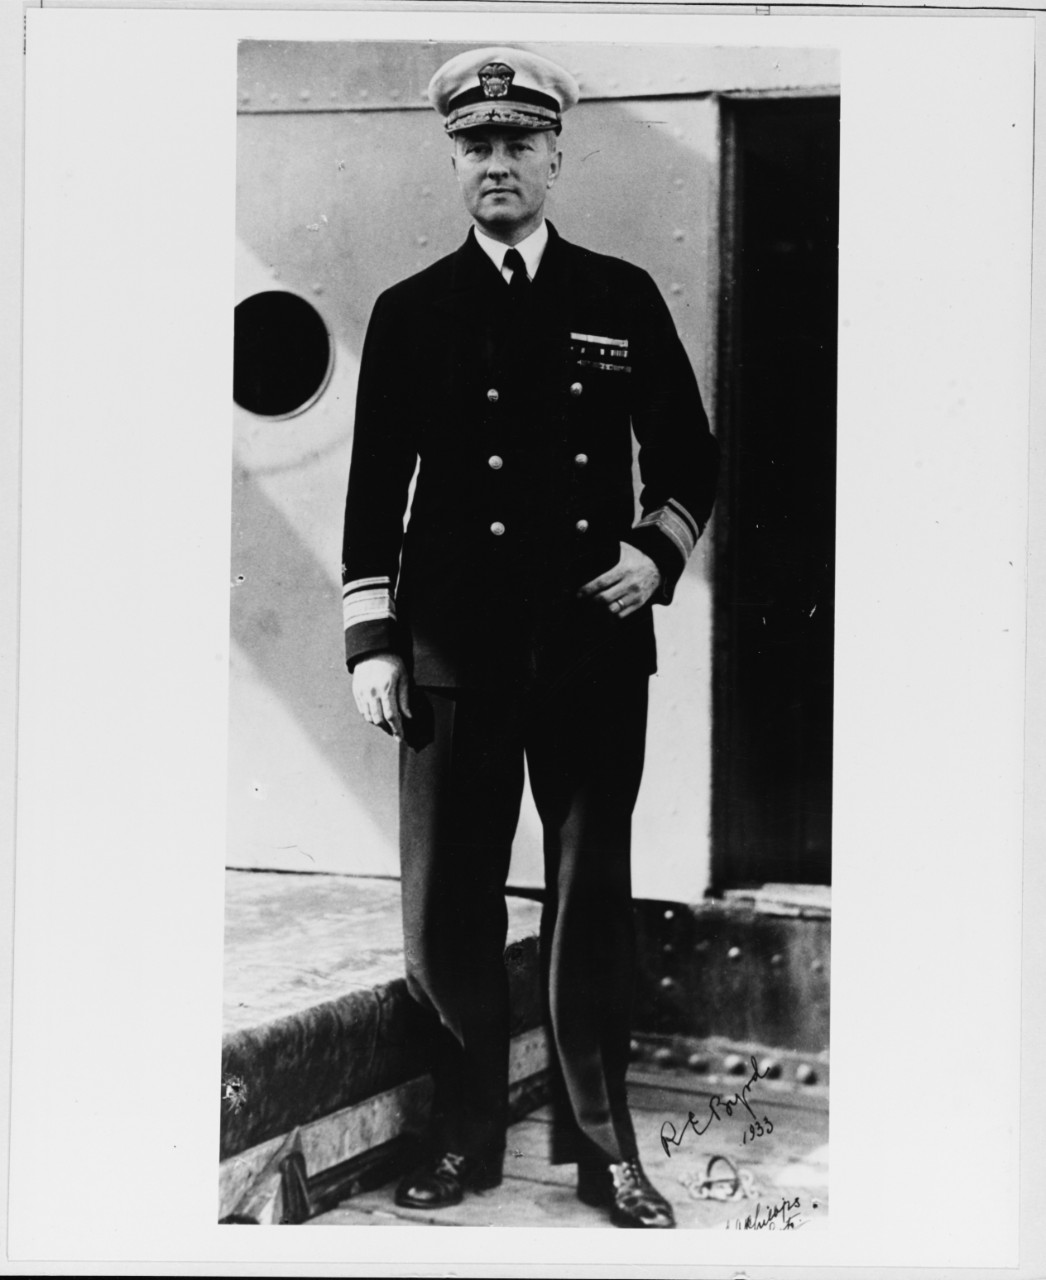 Rear-Admiral Richard E. Byrd, USN